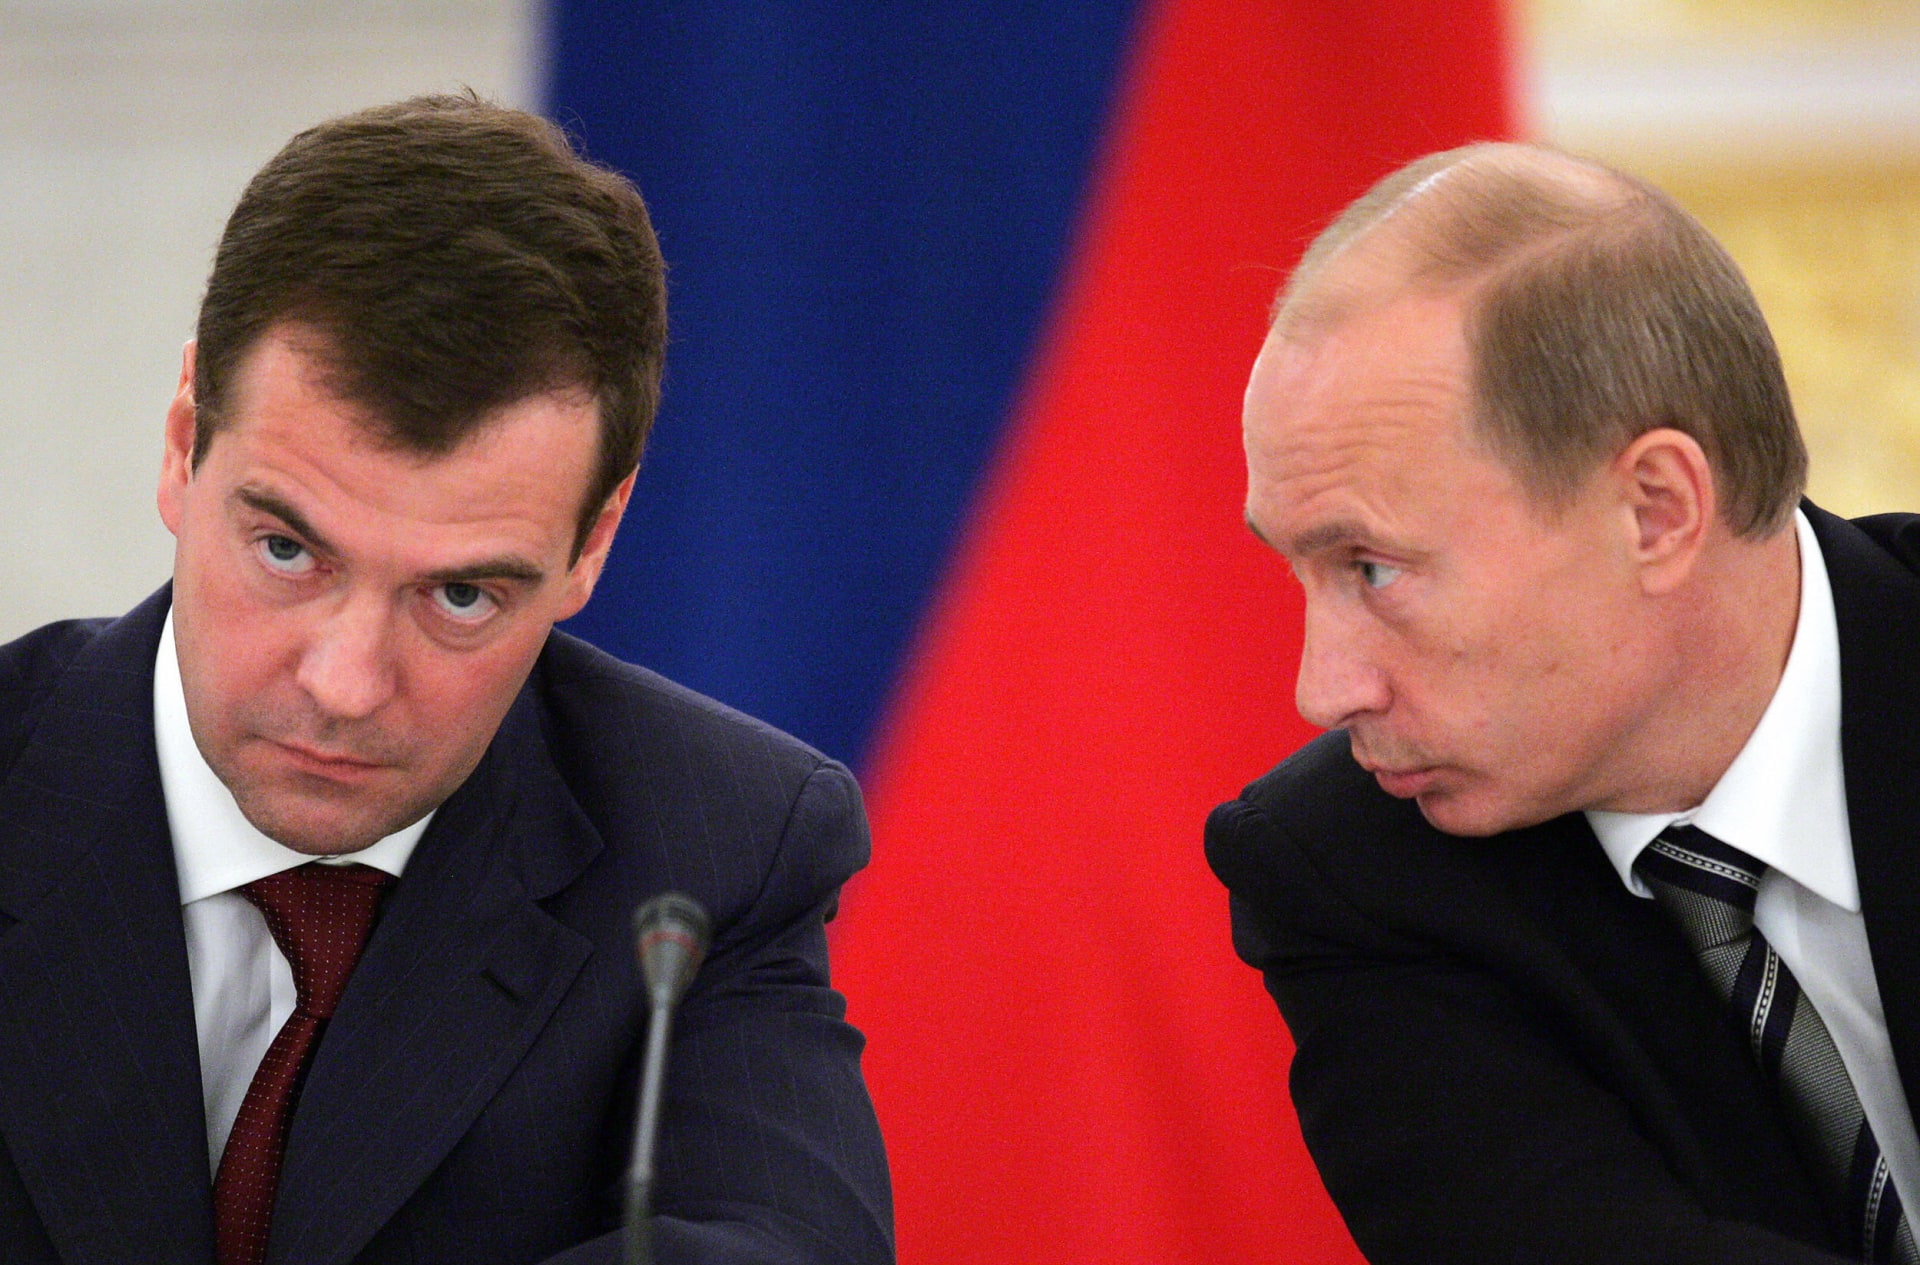 "مزح من العيار الثقيل".. رئيس روسيا السابق يرد على إيلون ماسك حول باخموت وسط تفاعل